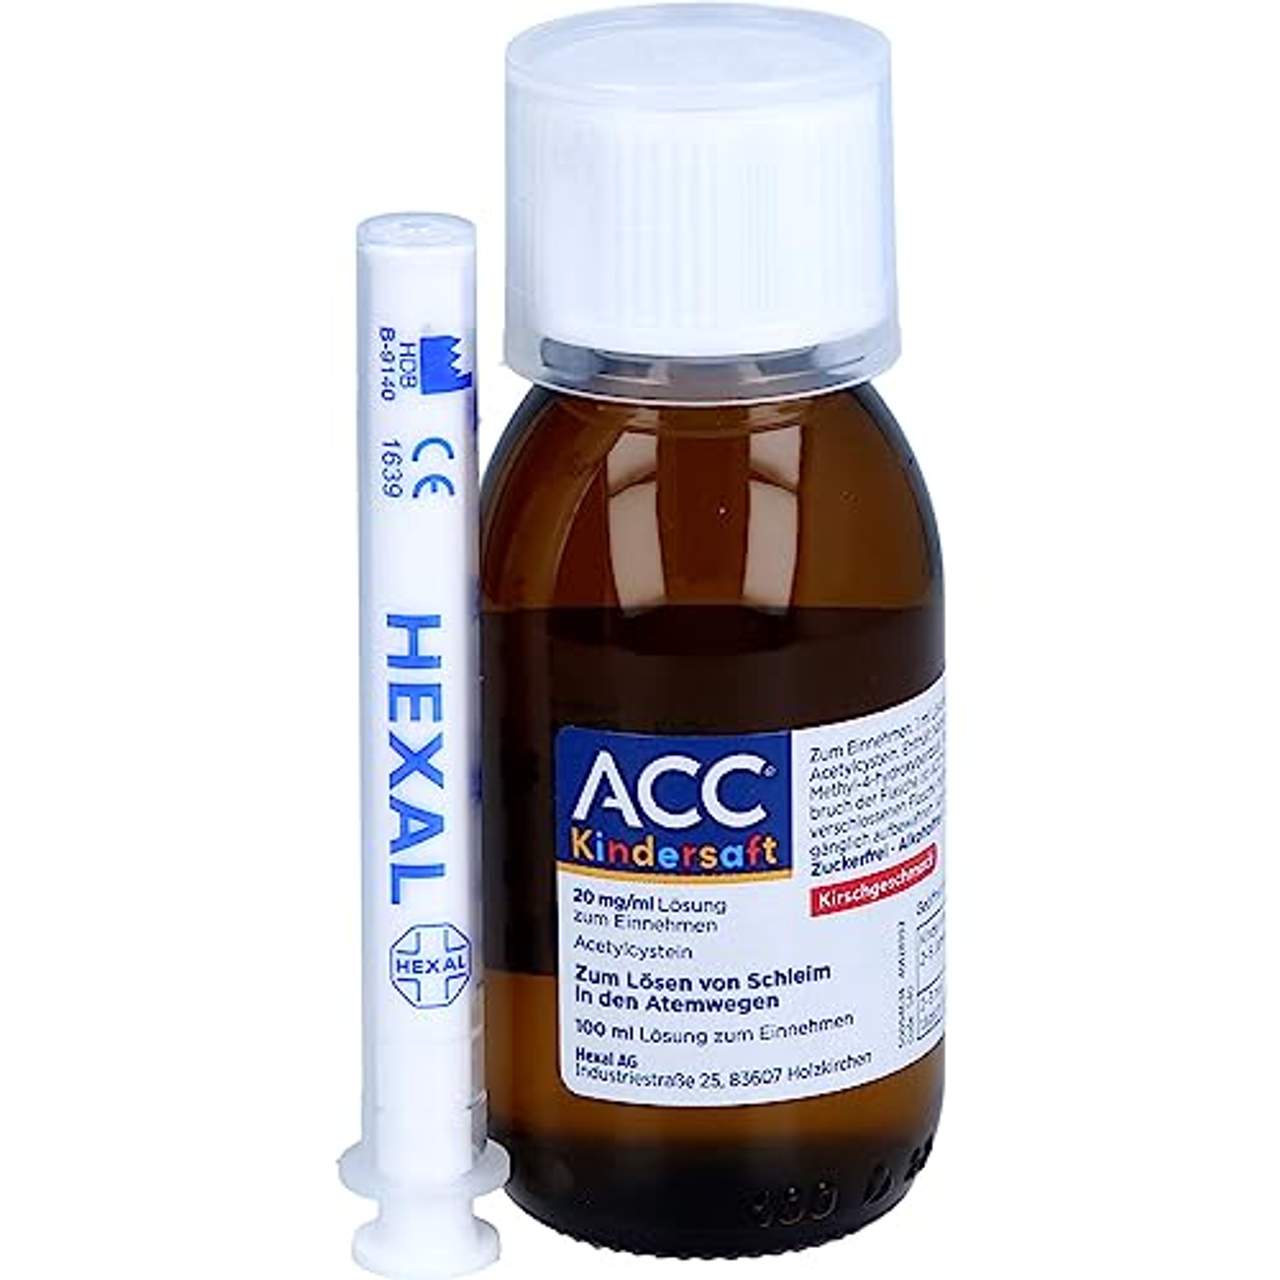 Hexal ACC Kindersaft 100 ml Saft